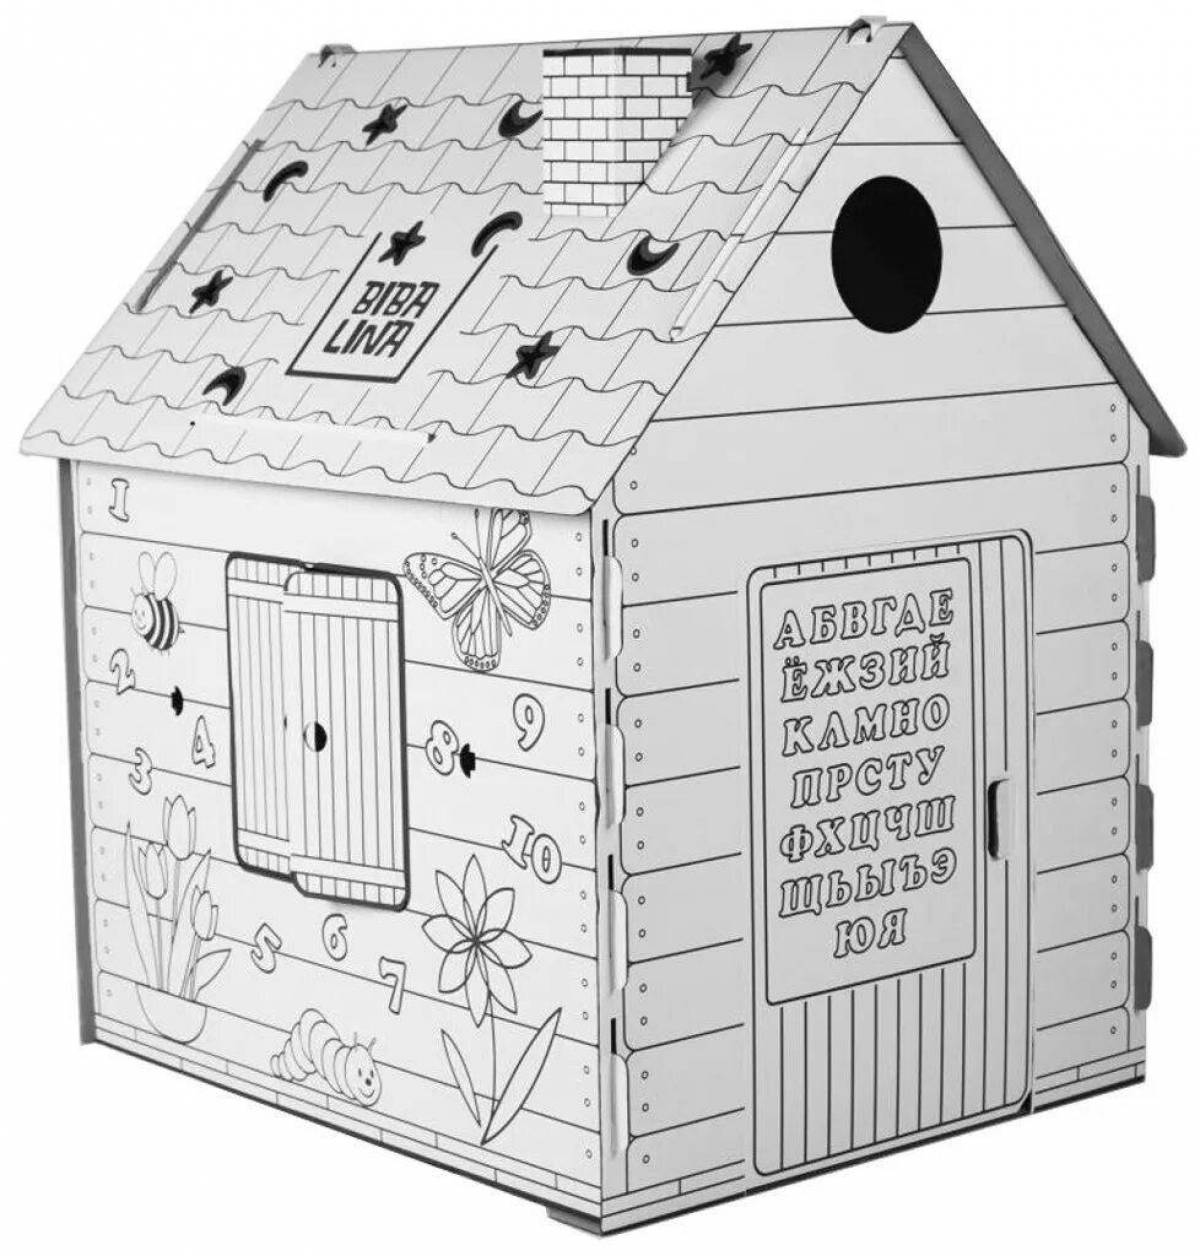 Потрясающая раскраска картонного домика для детей